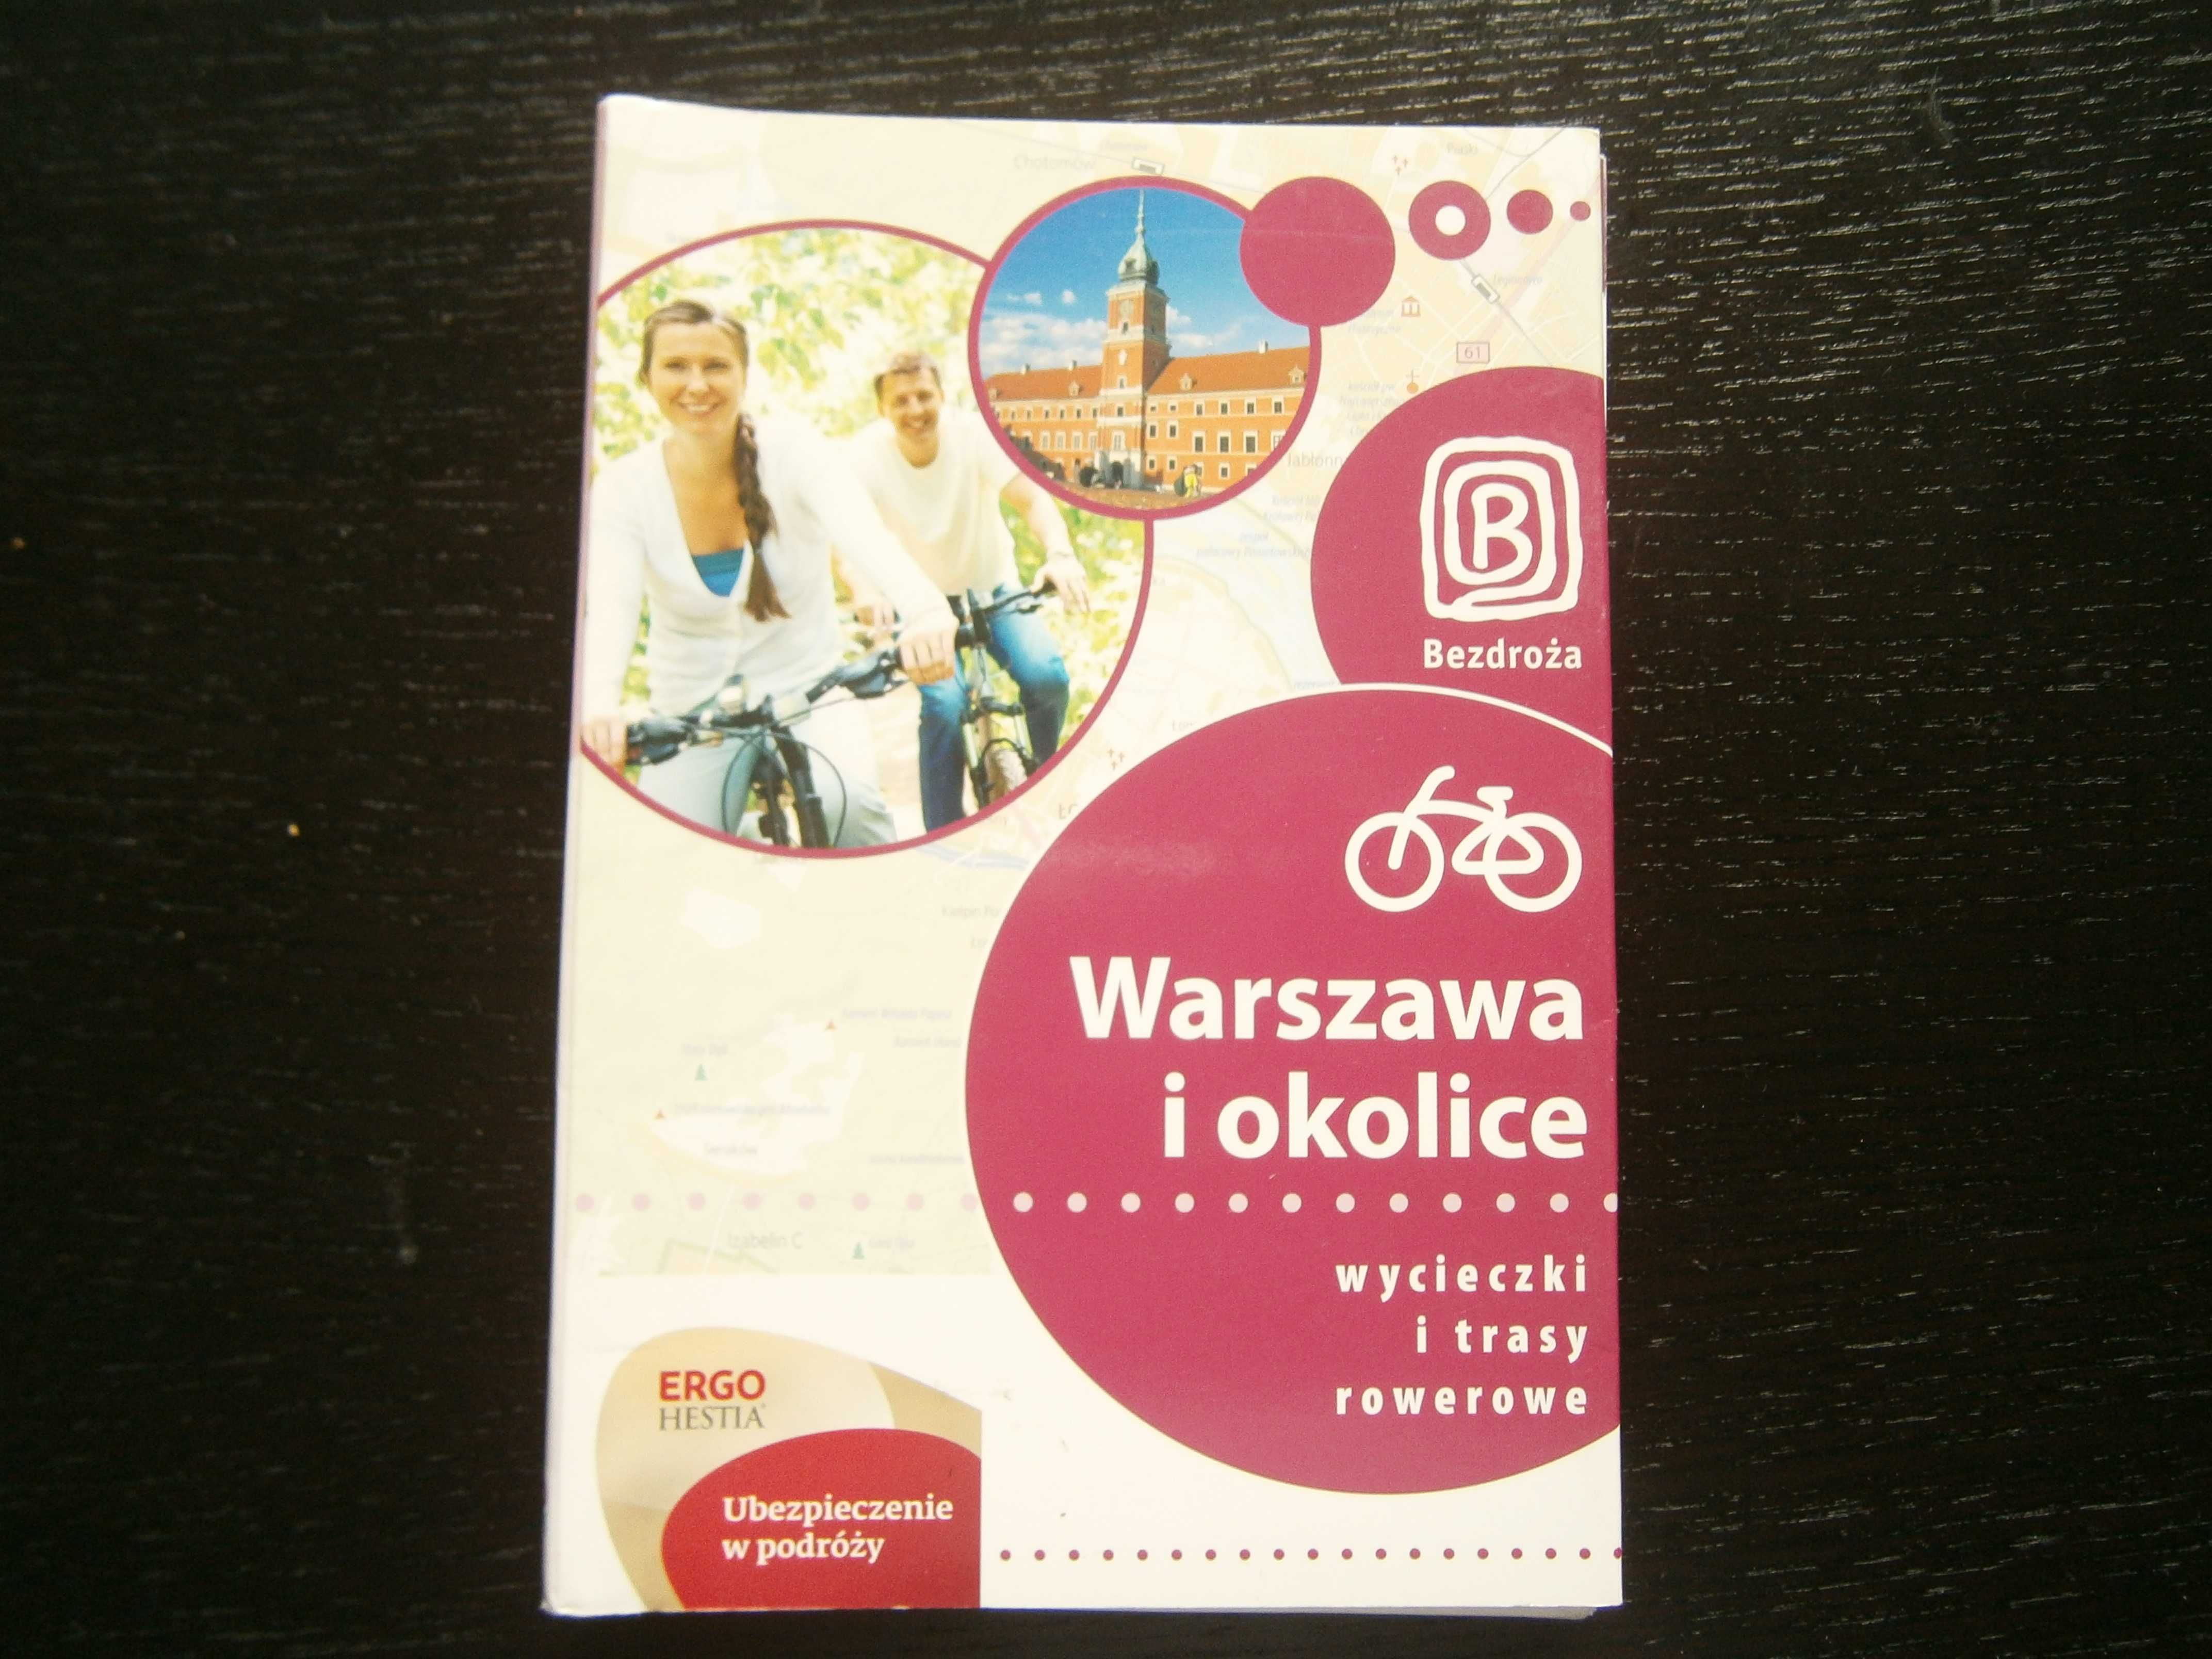 Warszawa i okolice wycieczki i trasy rowerowe przewodnik